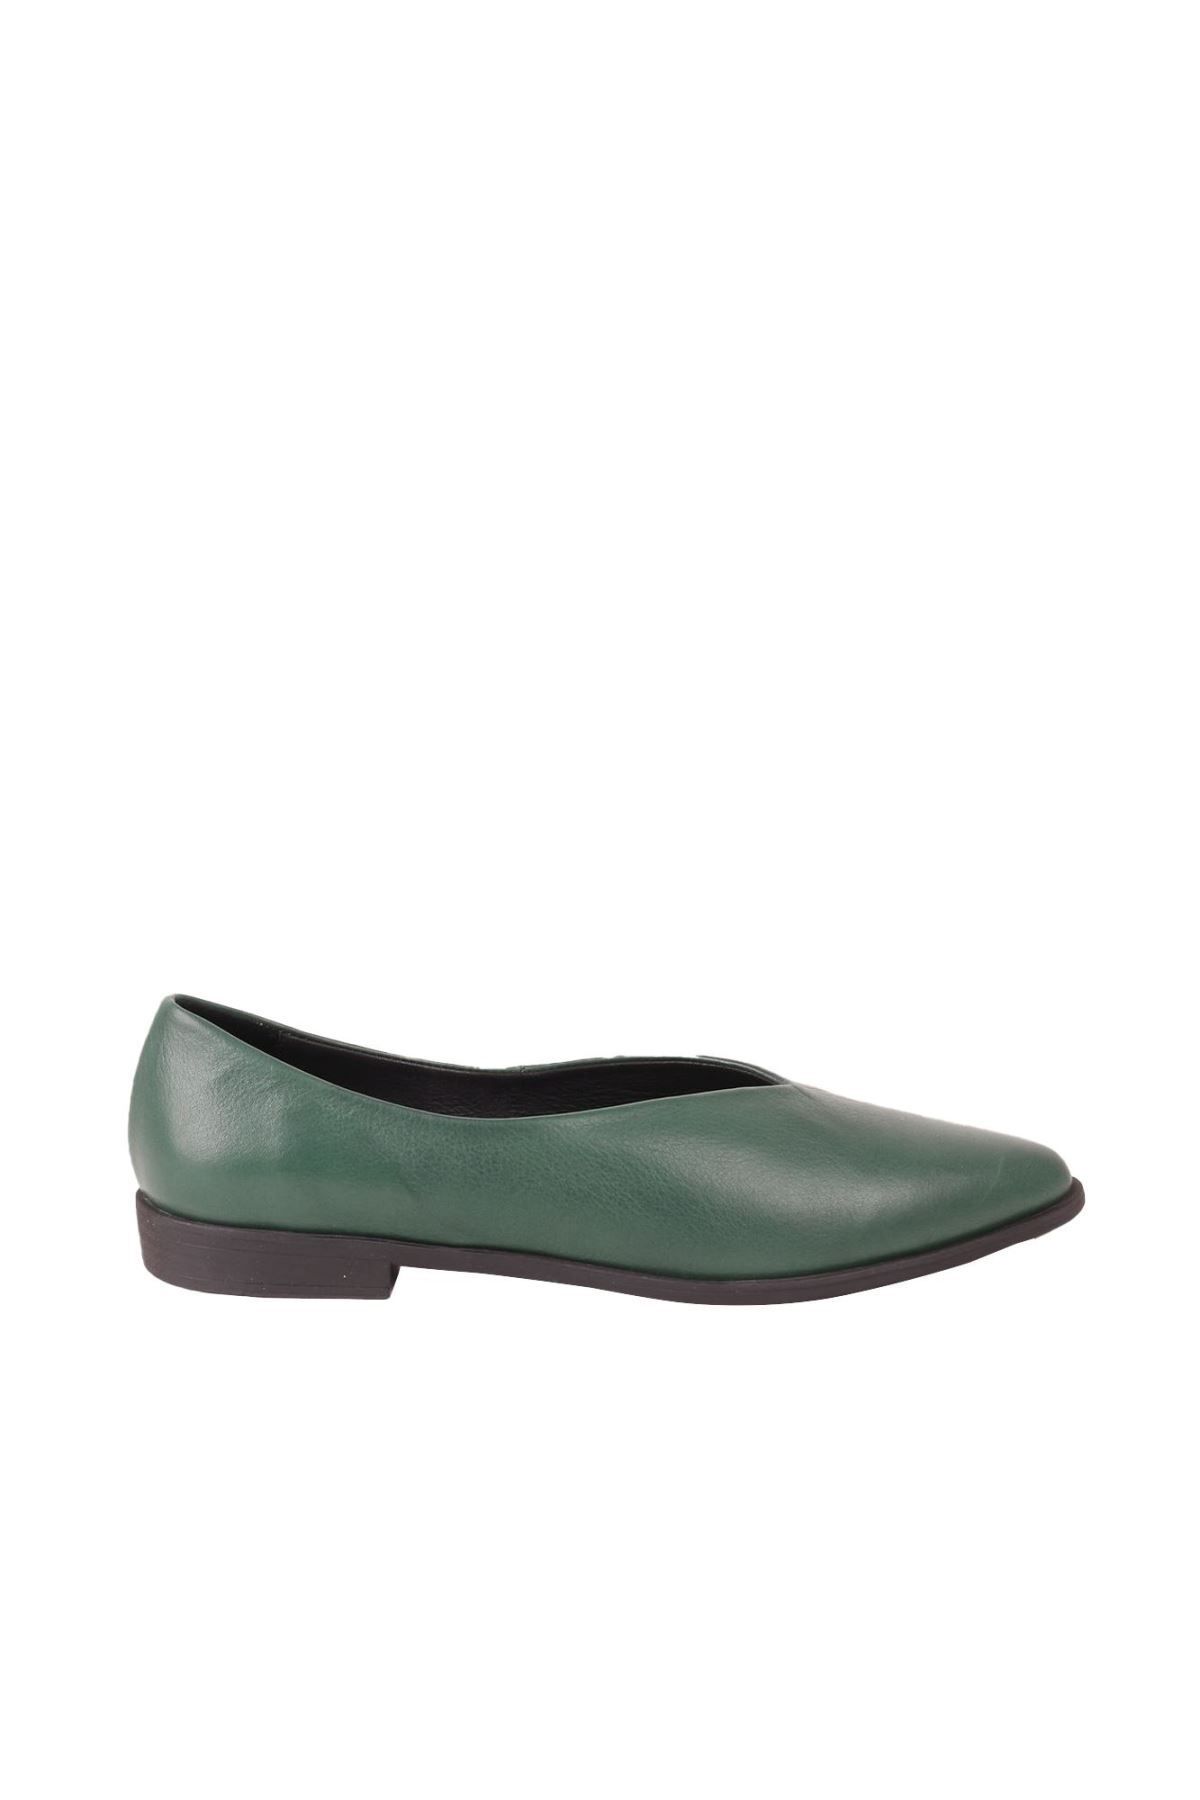 BUENO Shoes Yeşil Deri Kadın Düz Babet